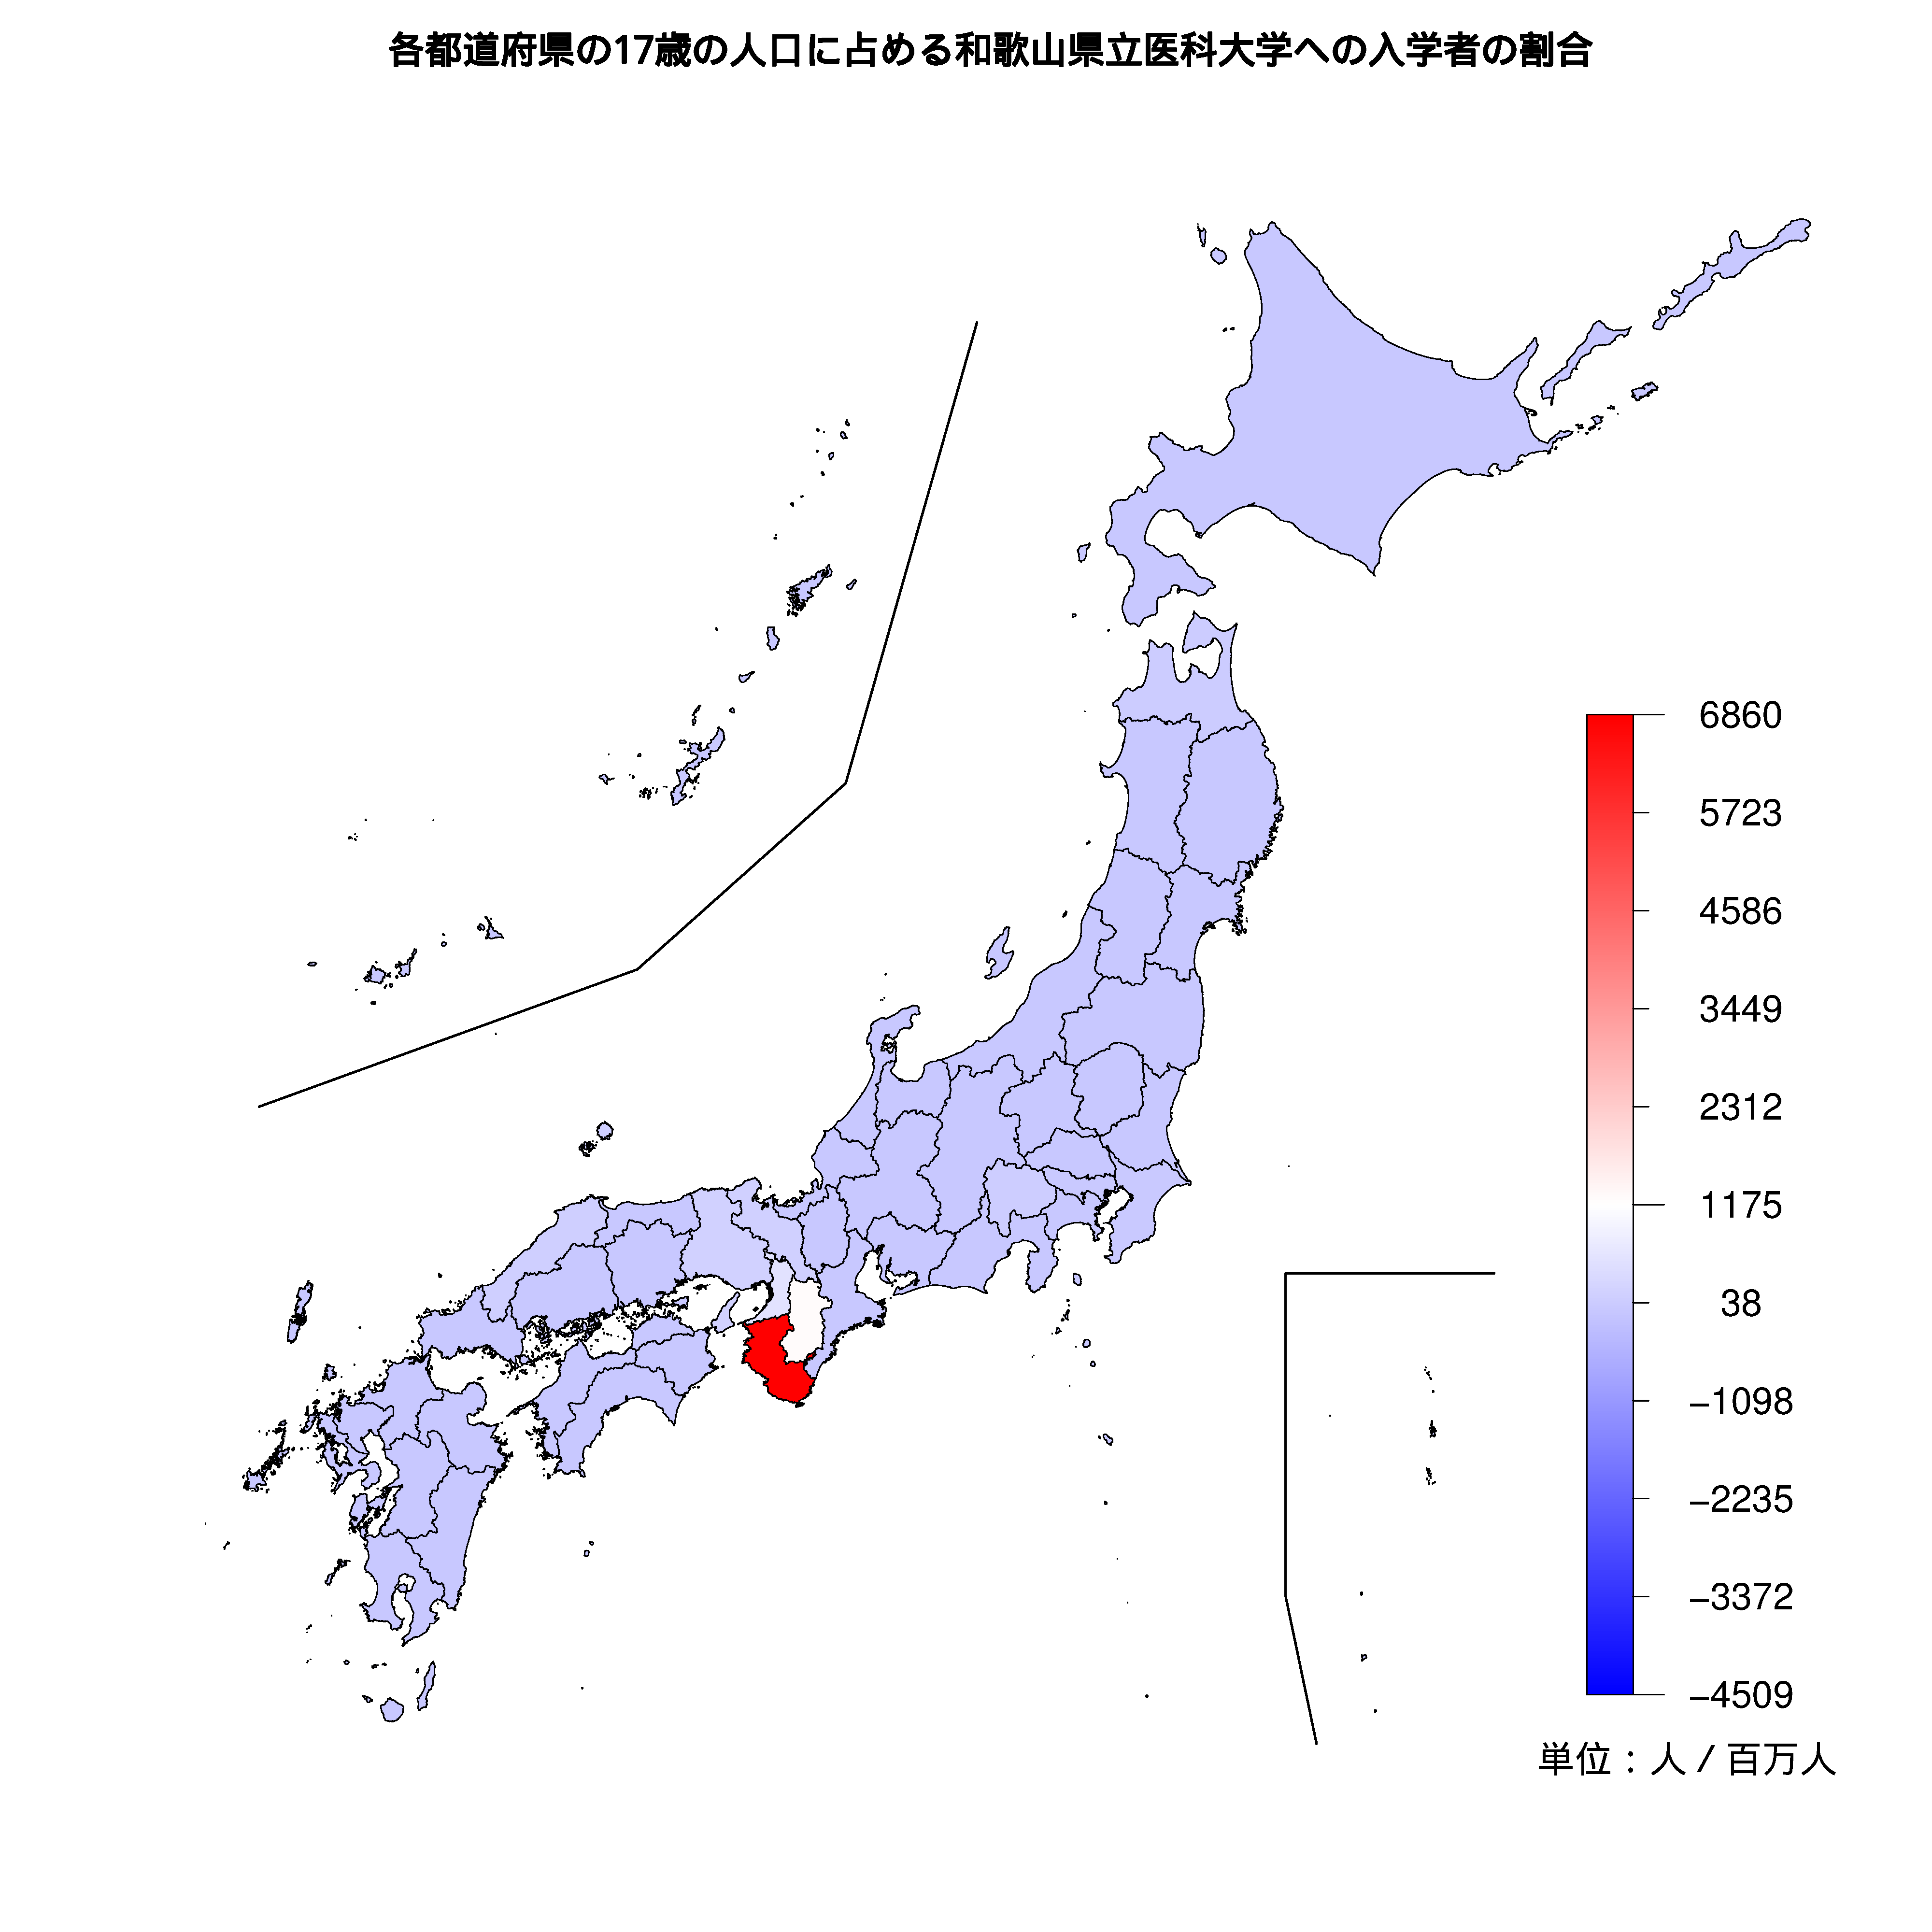 和歌山県立医科大学への入学者が多い都道府県の色分け地図